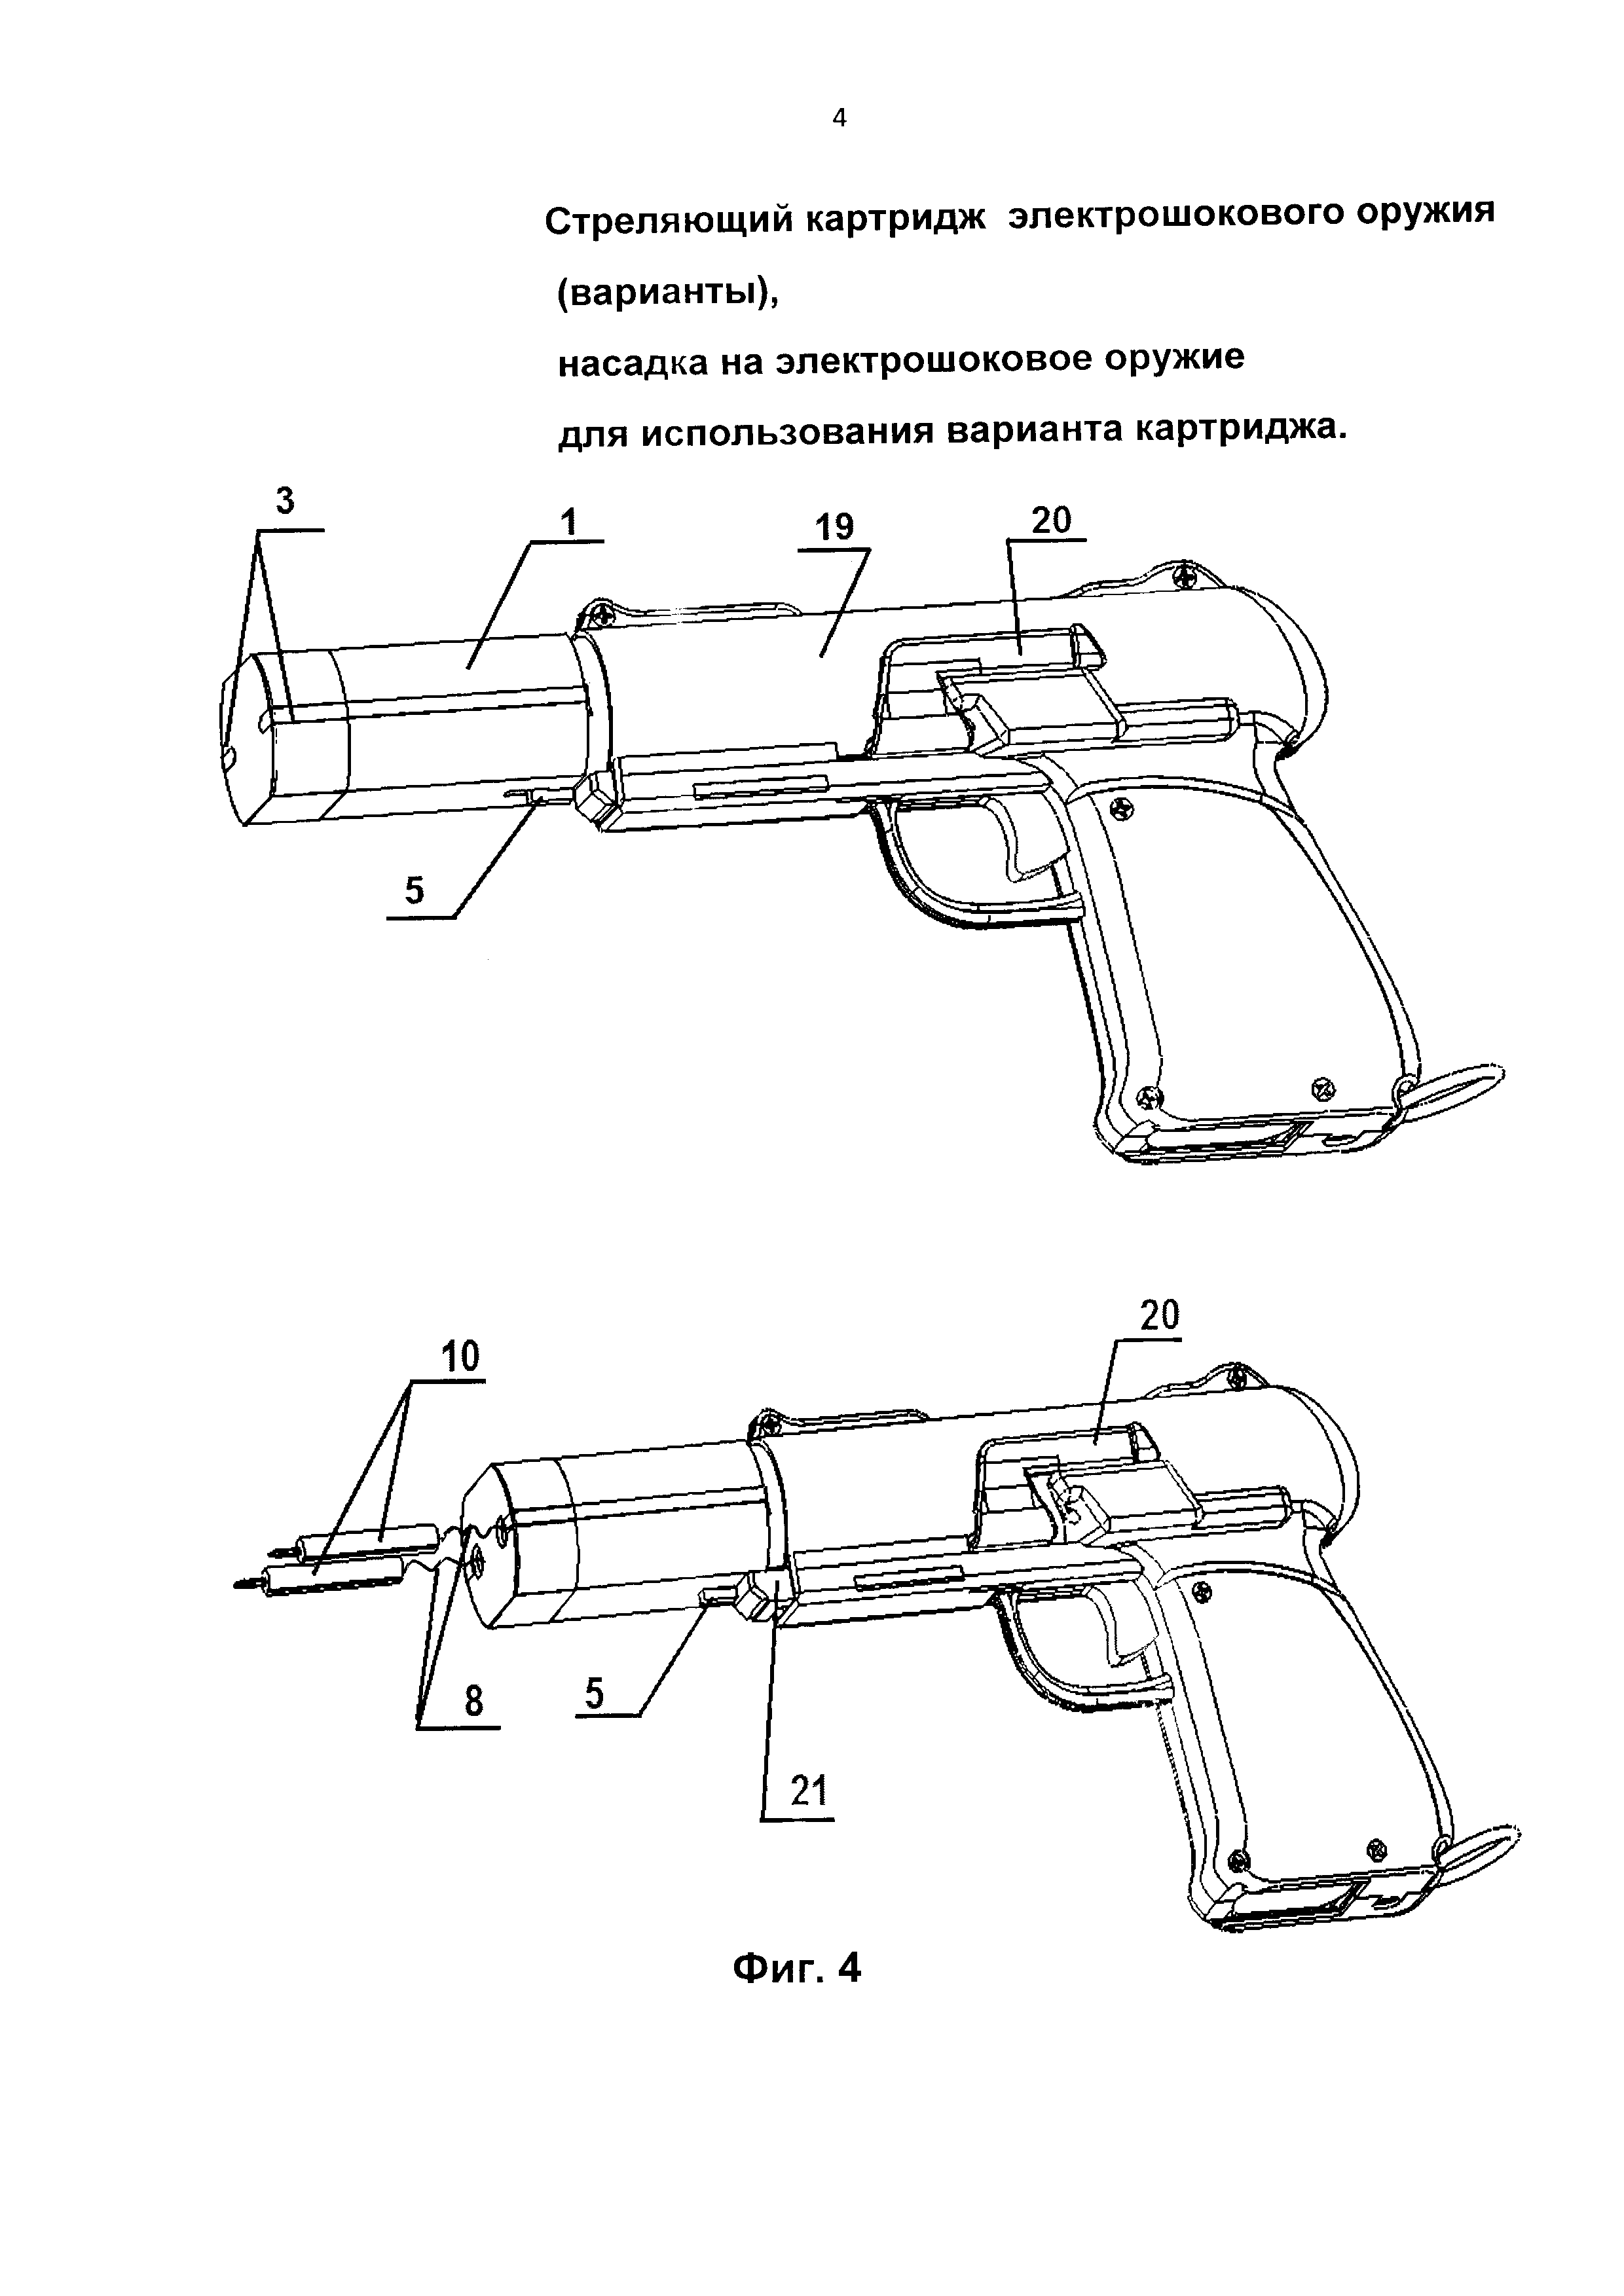 Стреляющий картридж дистанционного электрошокового оружия (варианты), насадка на электрошоковое оружие для использования варианта картриджа